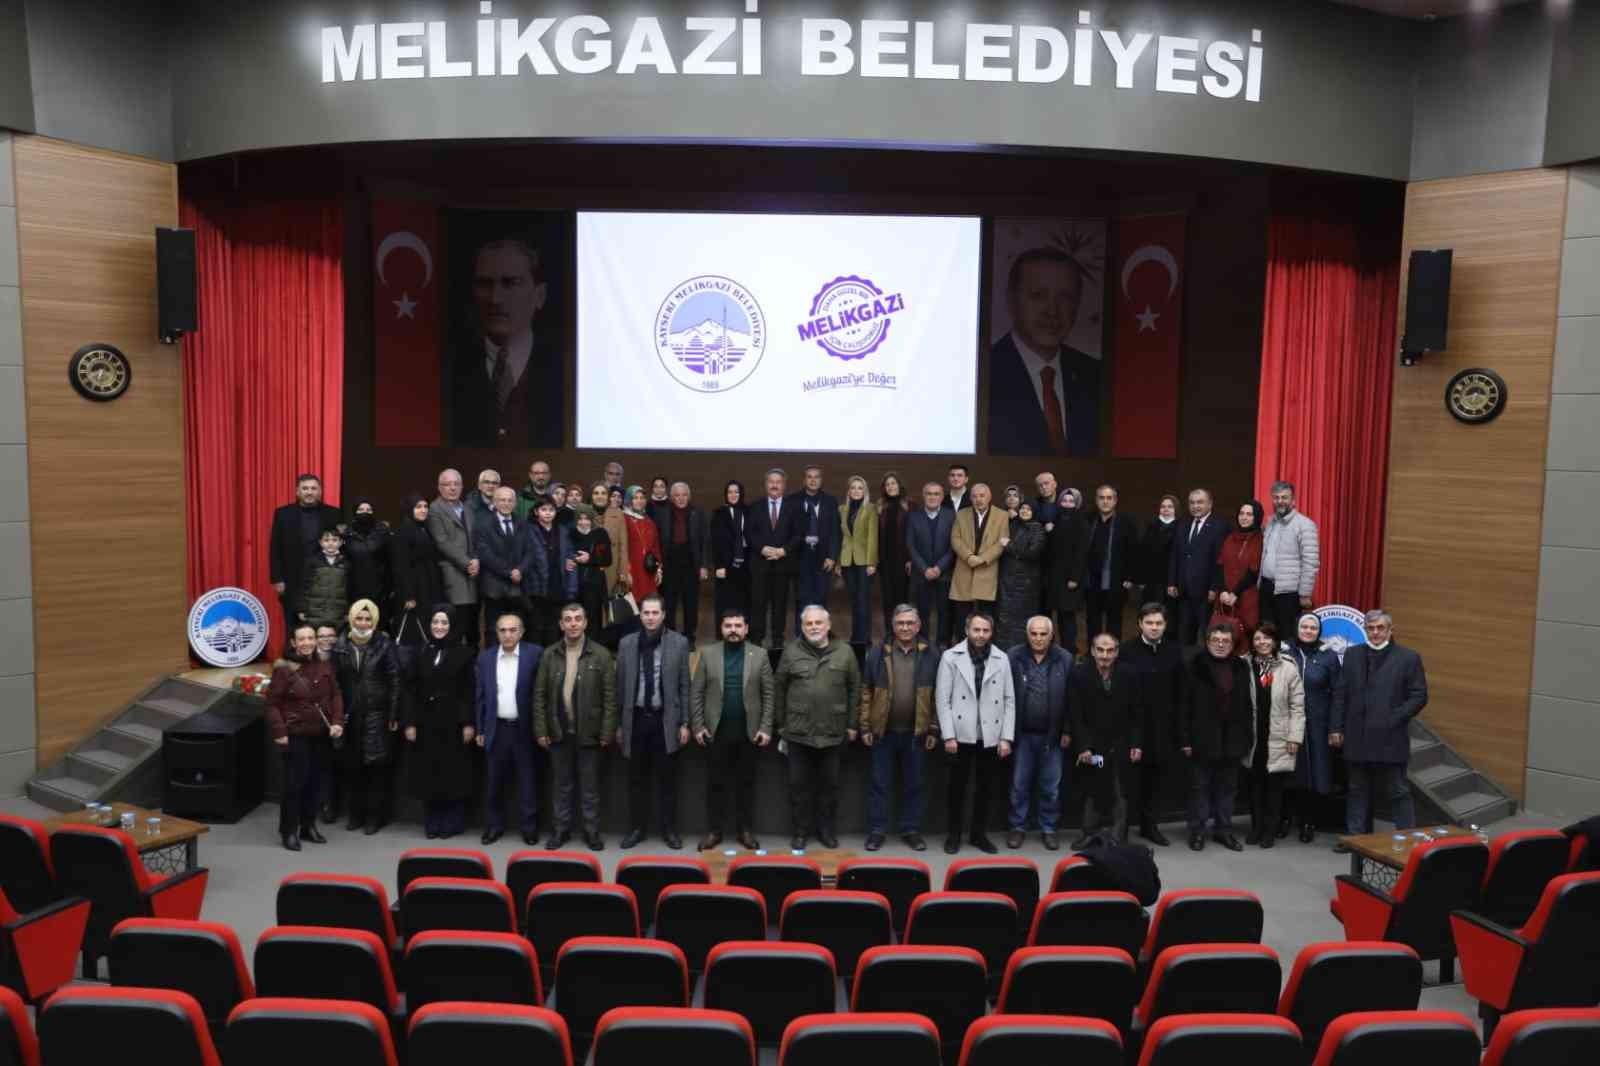 Başkan Palancıoğlu 2021 yılı hizmetlerini anlatmaya devam ediyor #kayseri